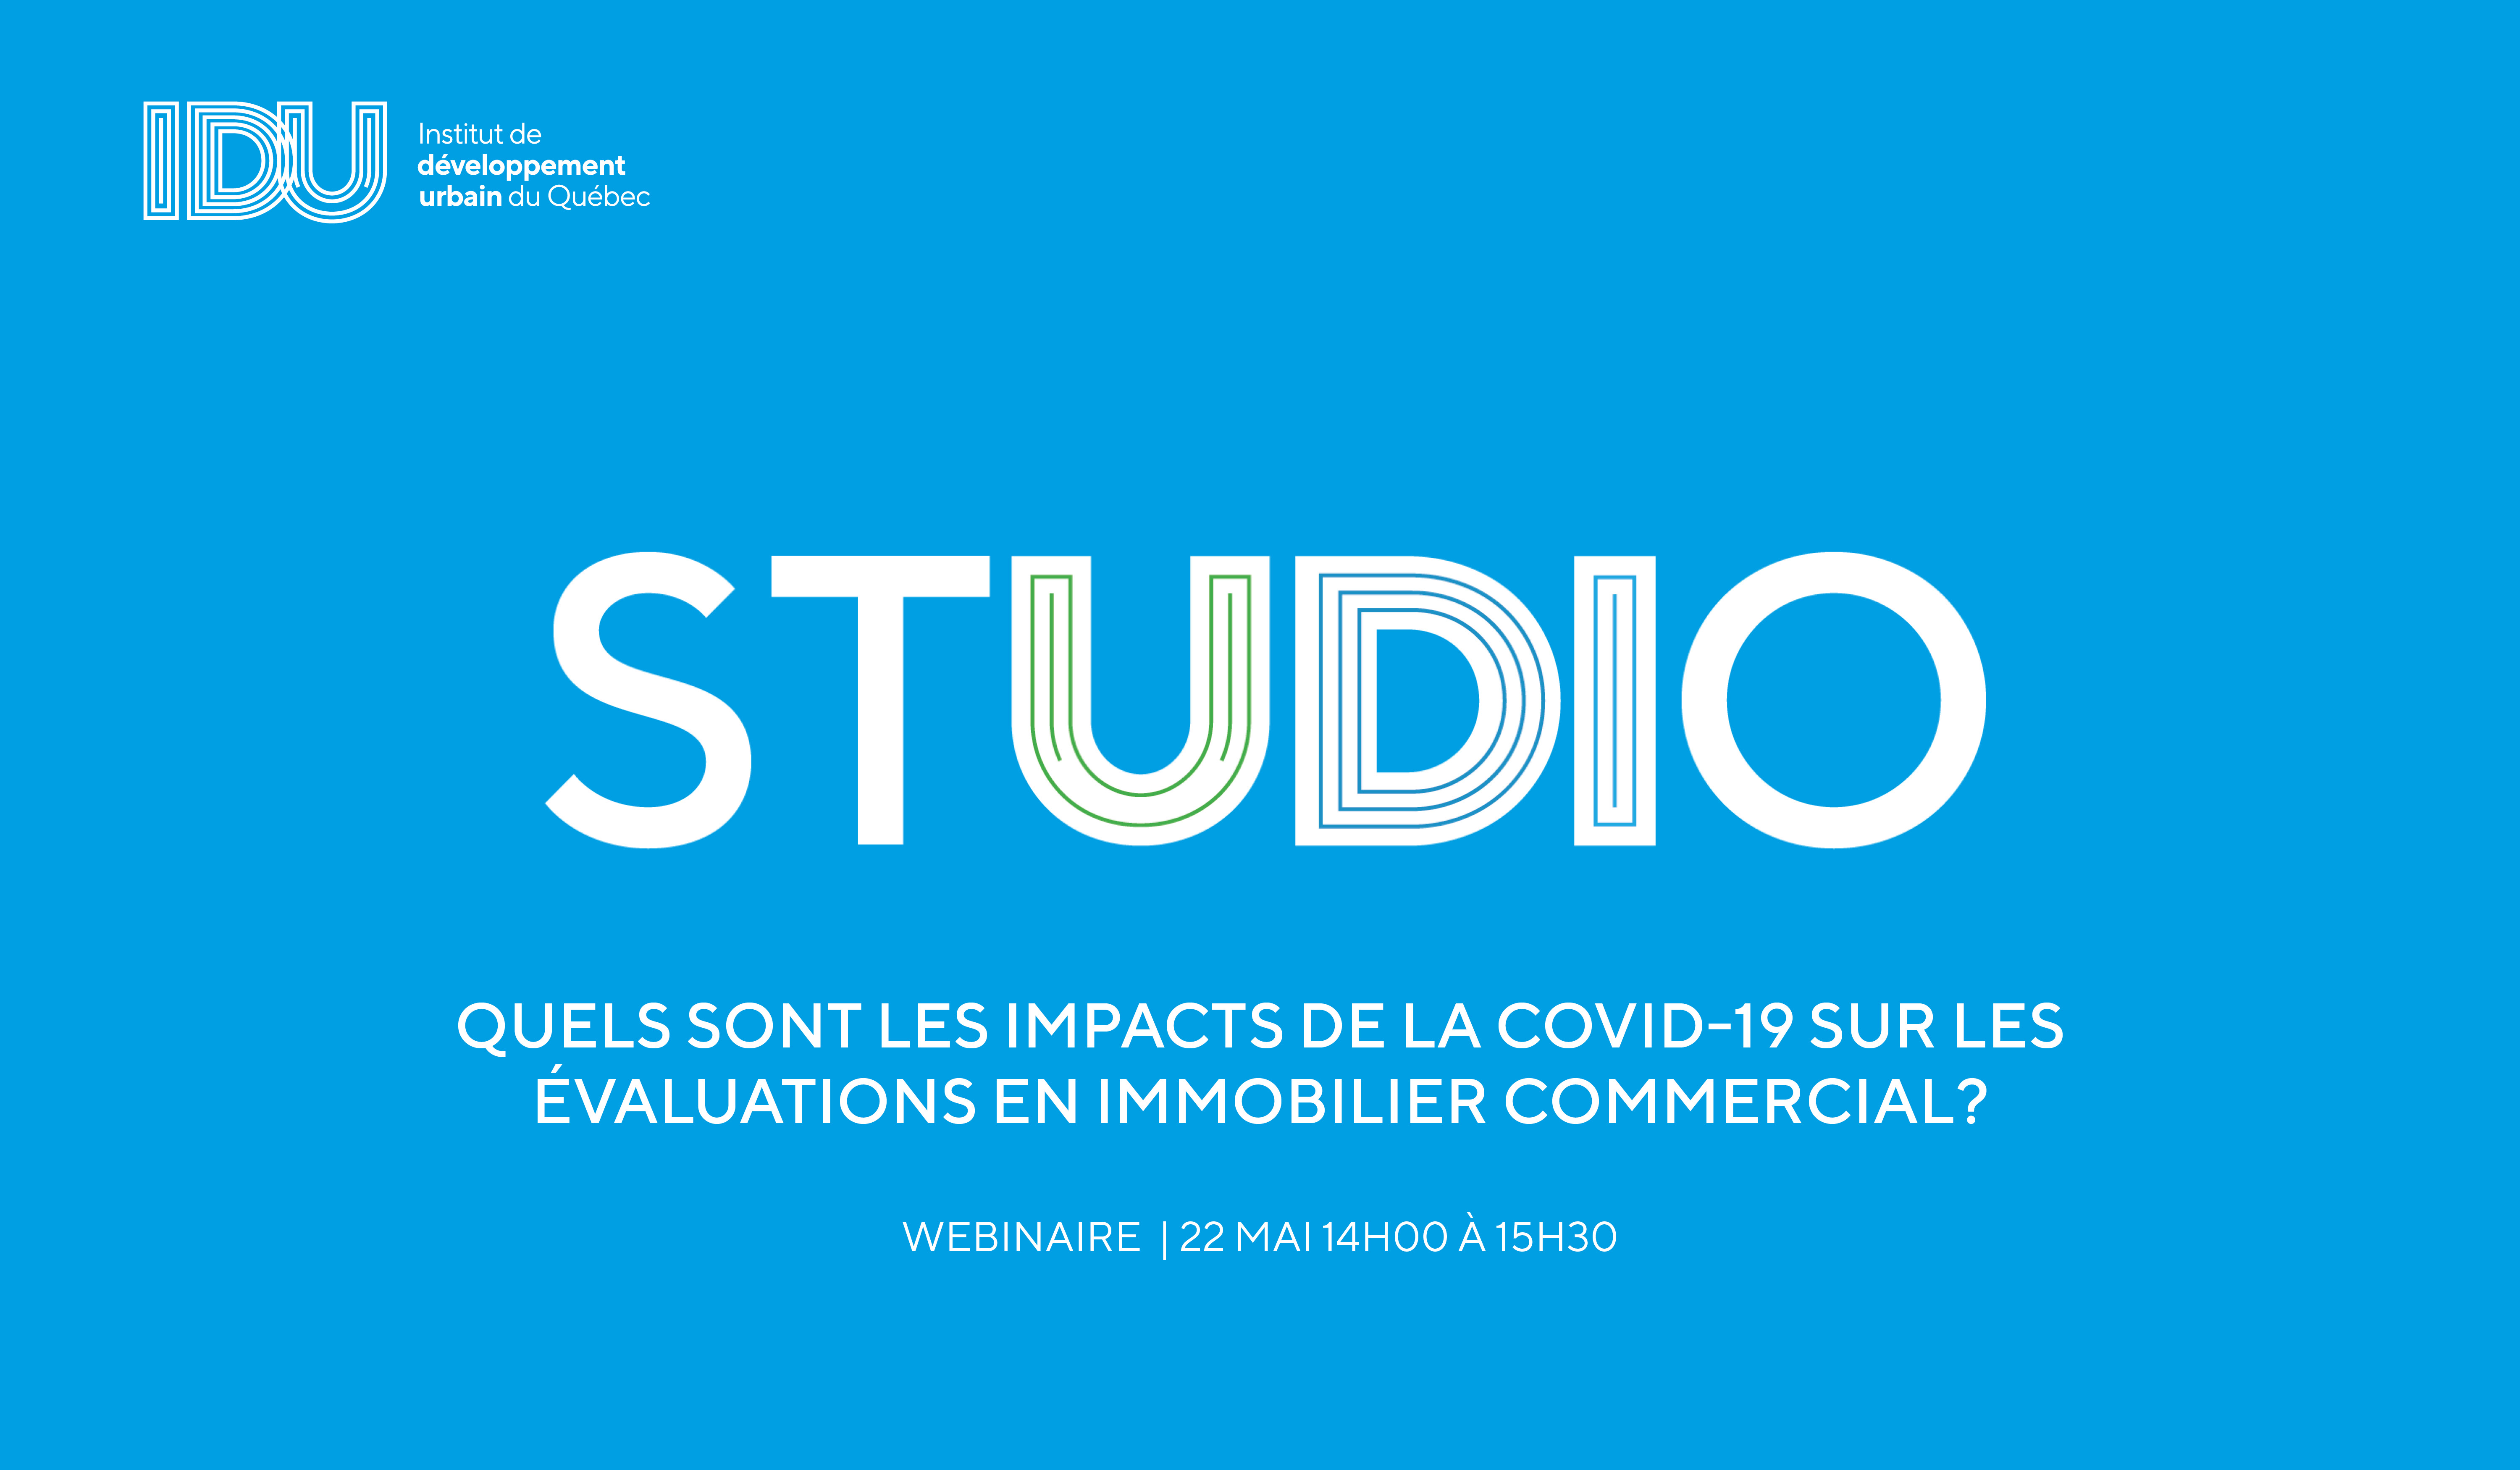 STUDIO IDU - Quels sont les impacts de la COVID-19 sur les évaluations en immobilier commercial ?